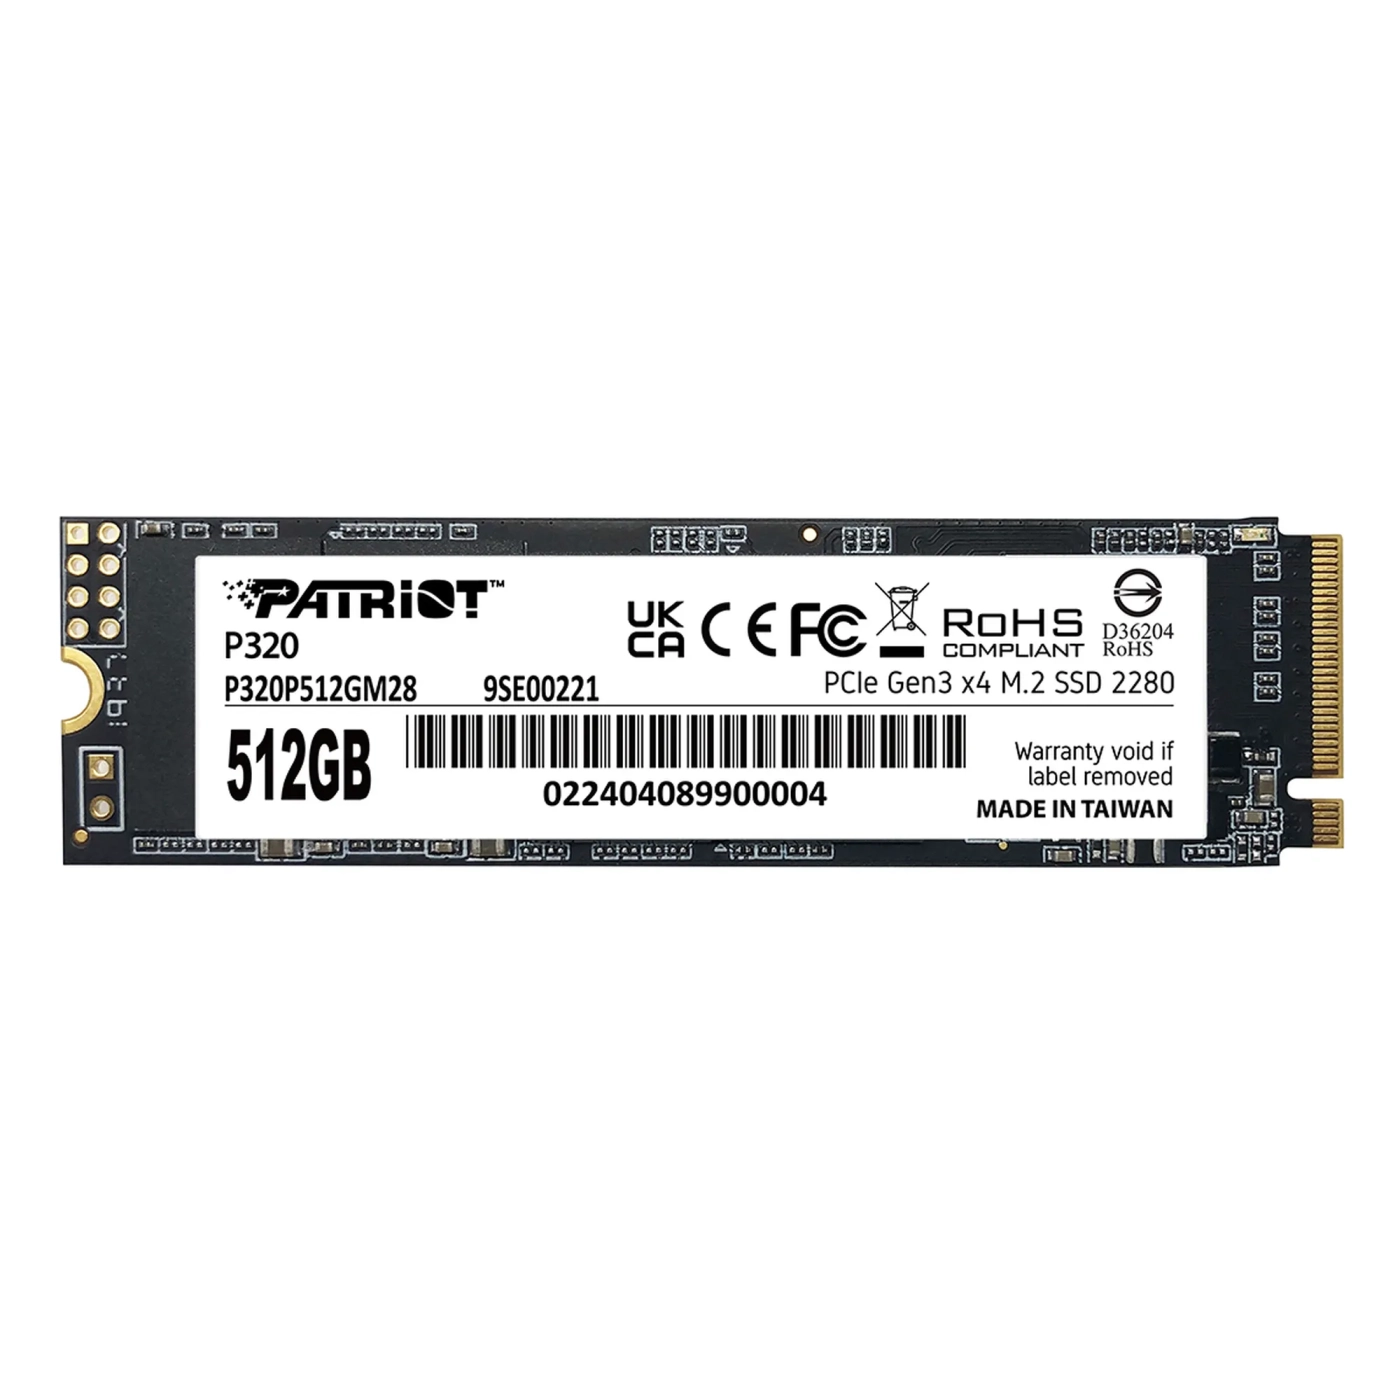 Купить SSD диск Patriot P320 512GB M.2 (P320P512GM28) - фото 1